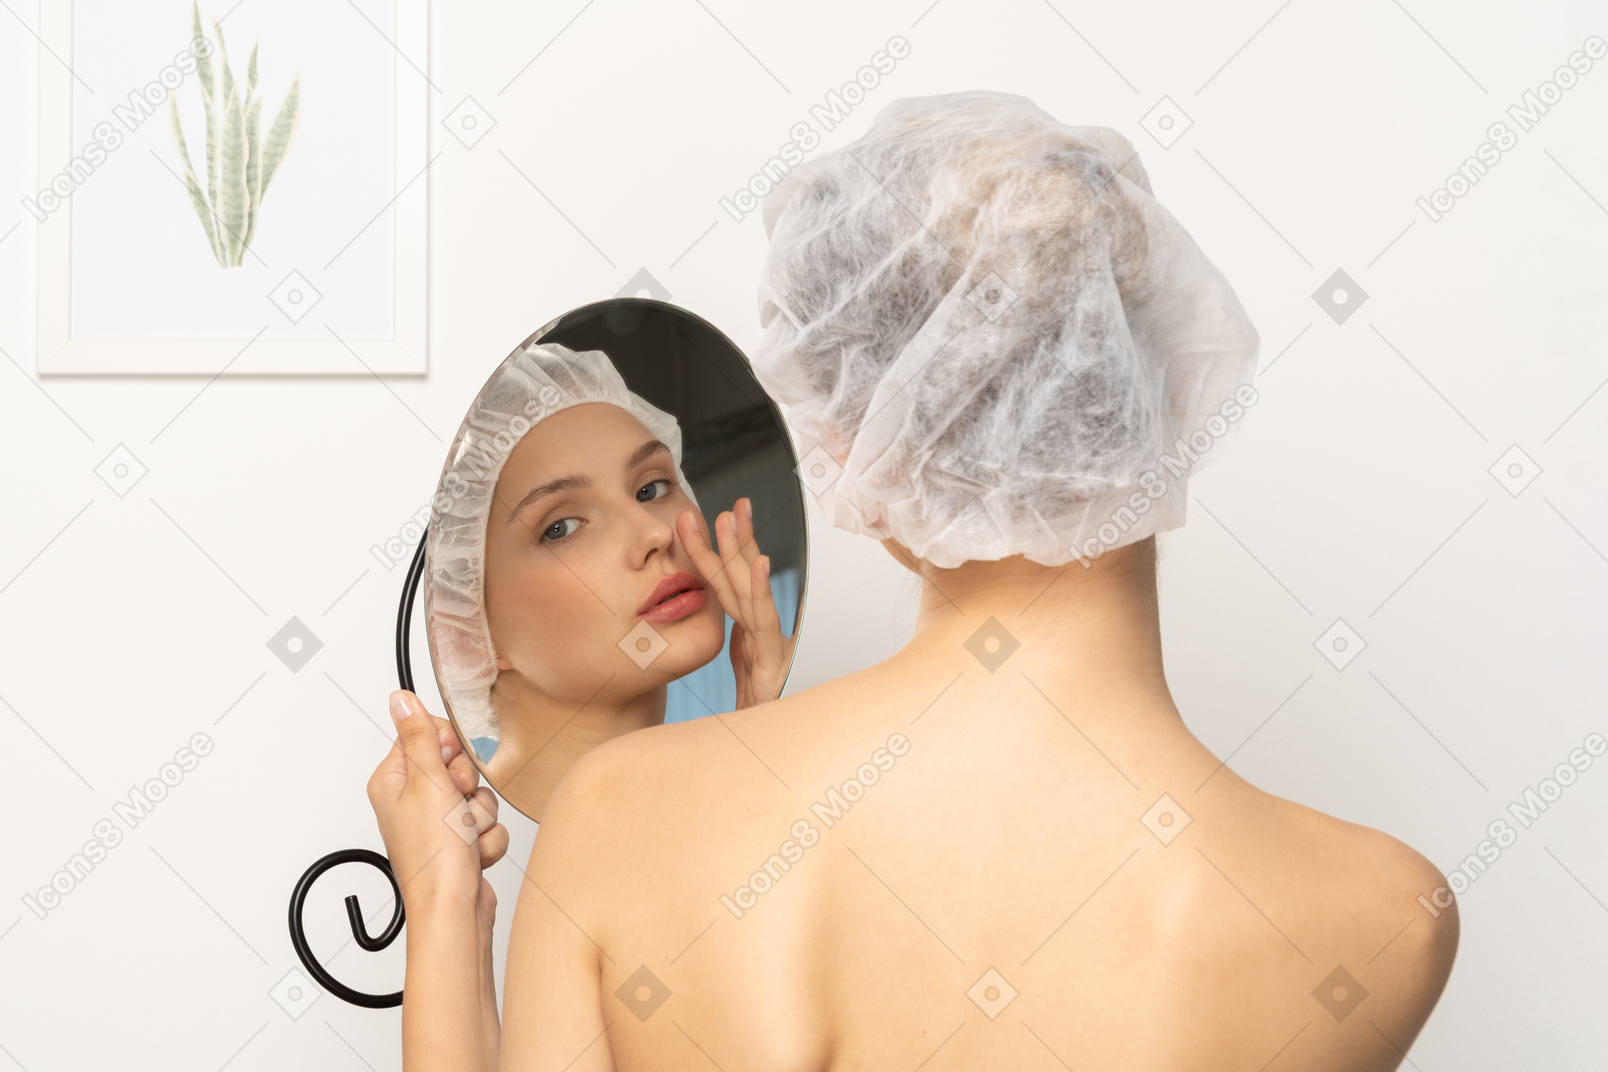 戴医用帽的女人照镜子时摸着脸